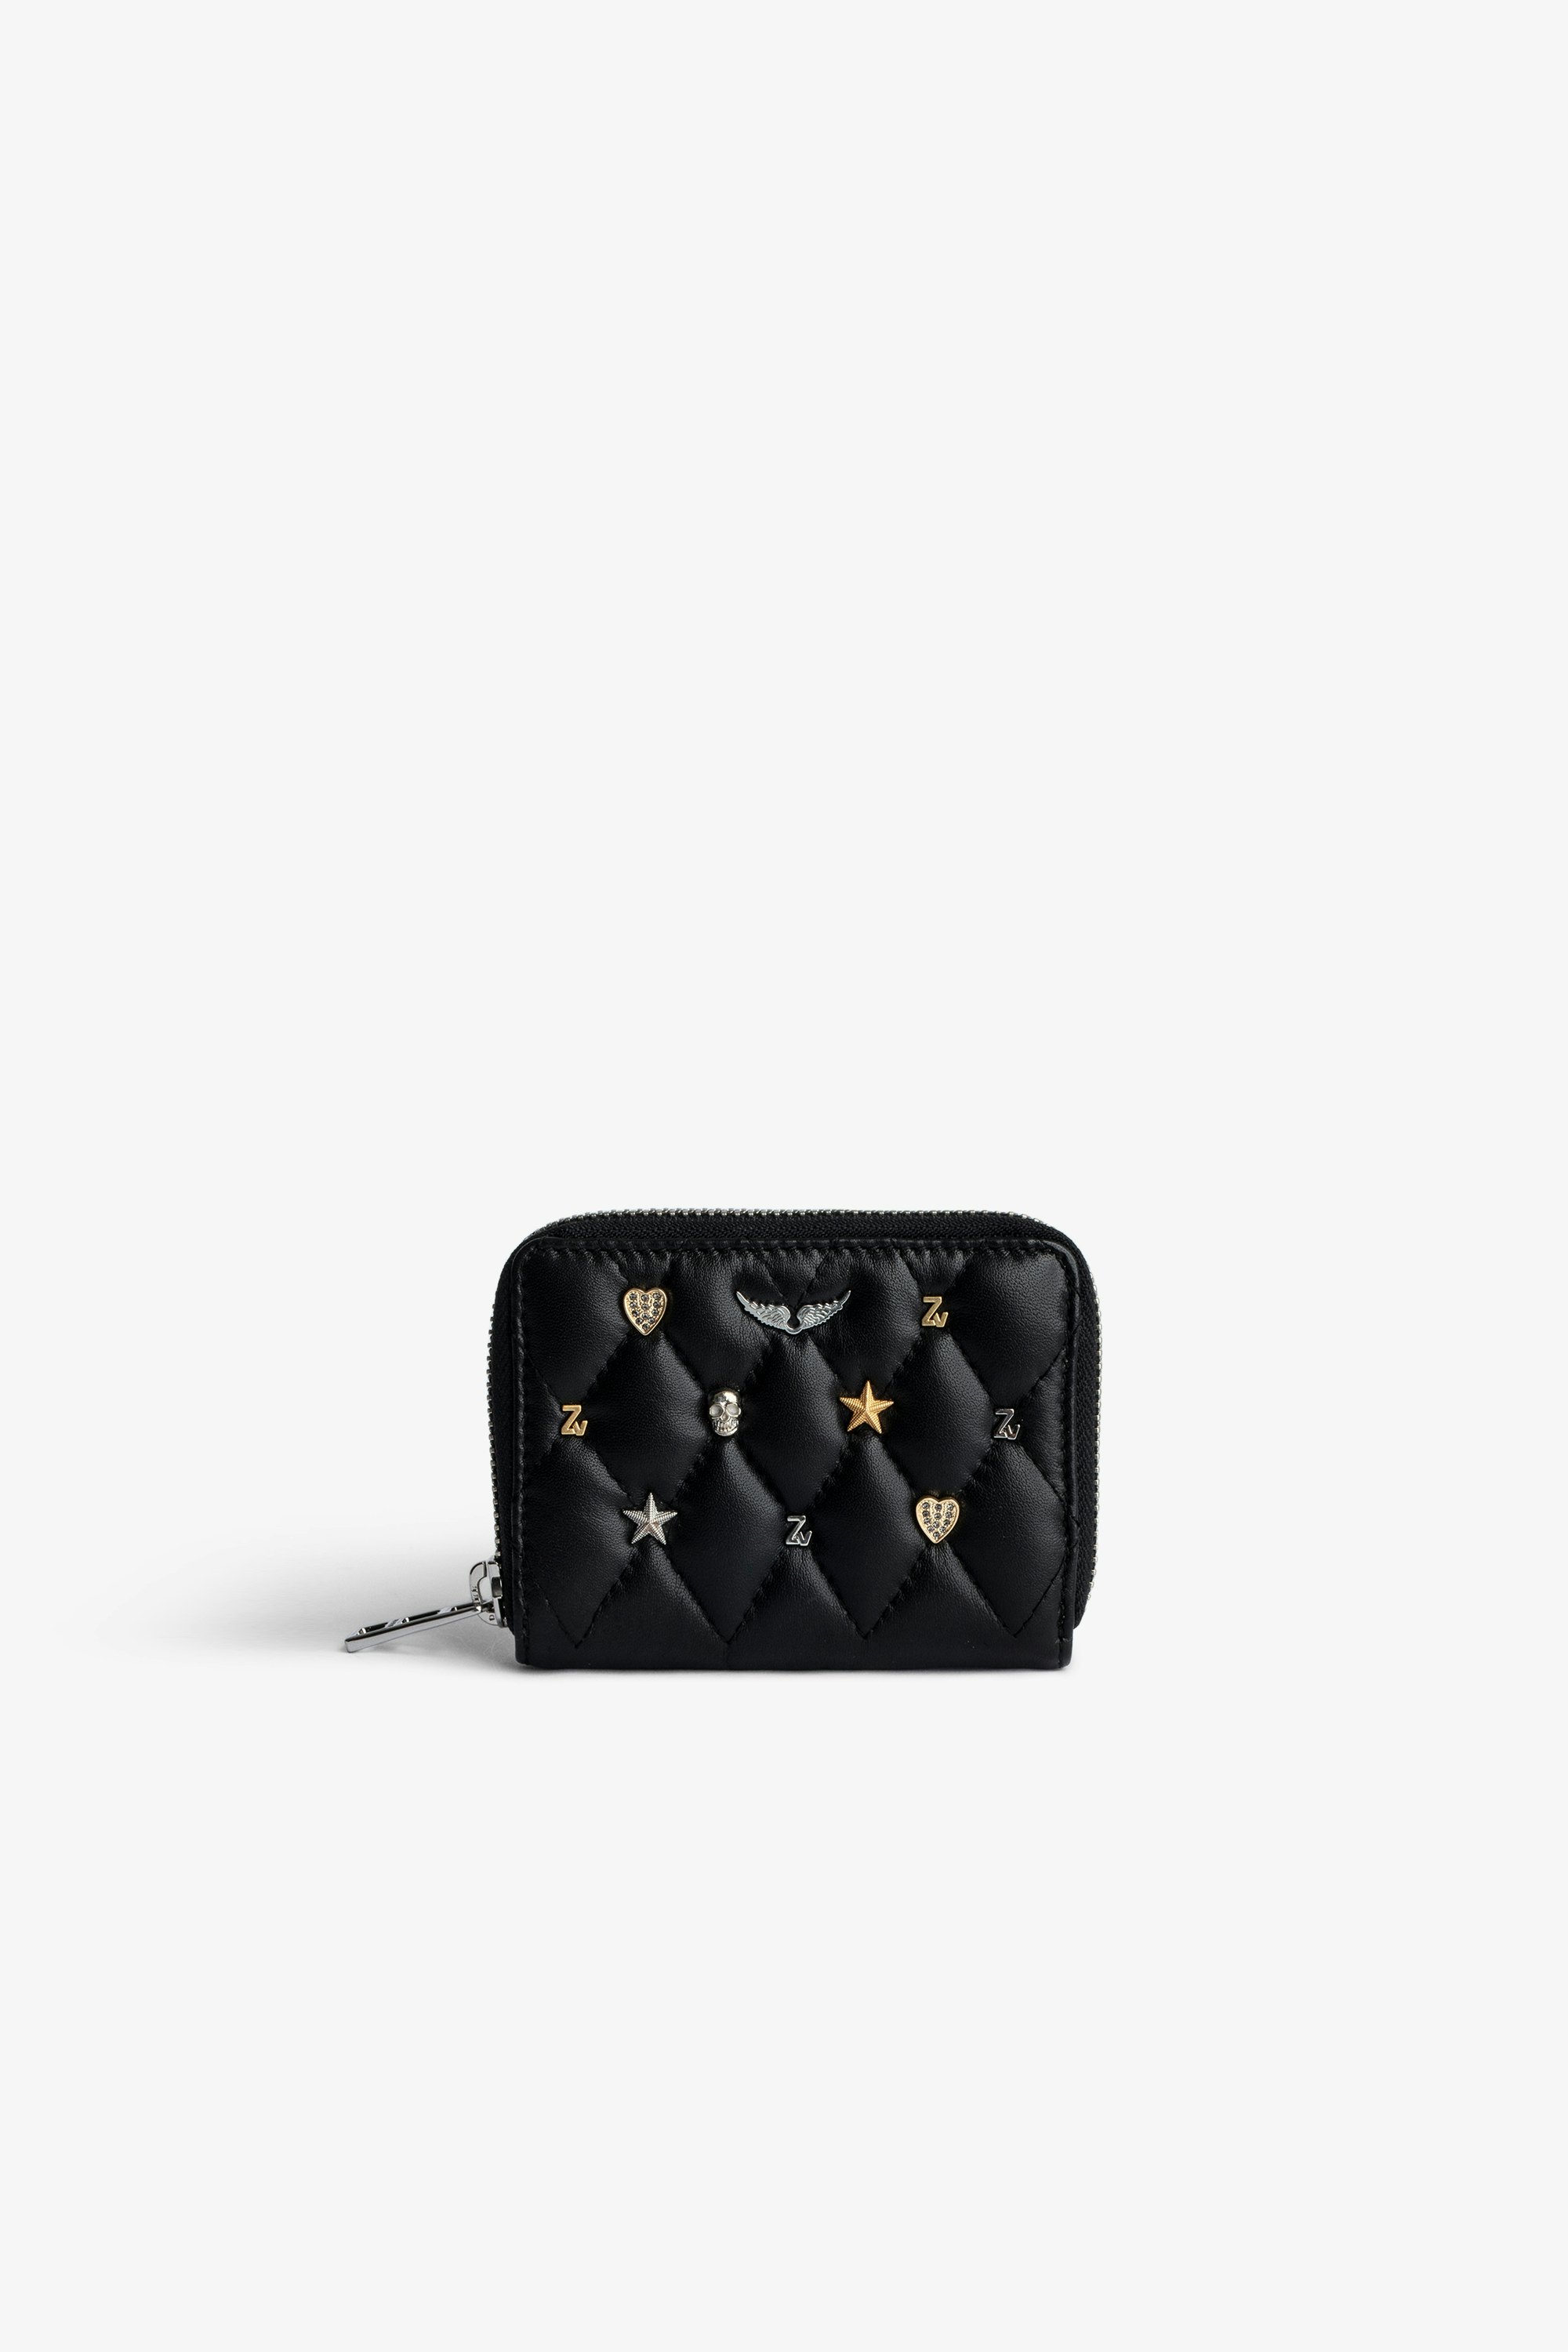 Portamonete Mini ZV - Portamonete con zip in pelle nera trapuntata con charm argento e oro donna.